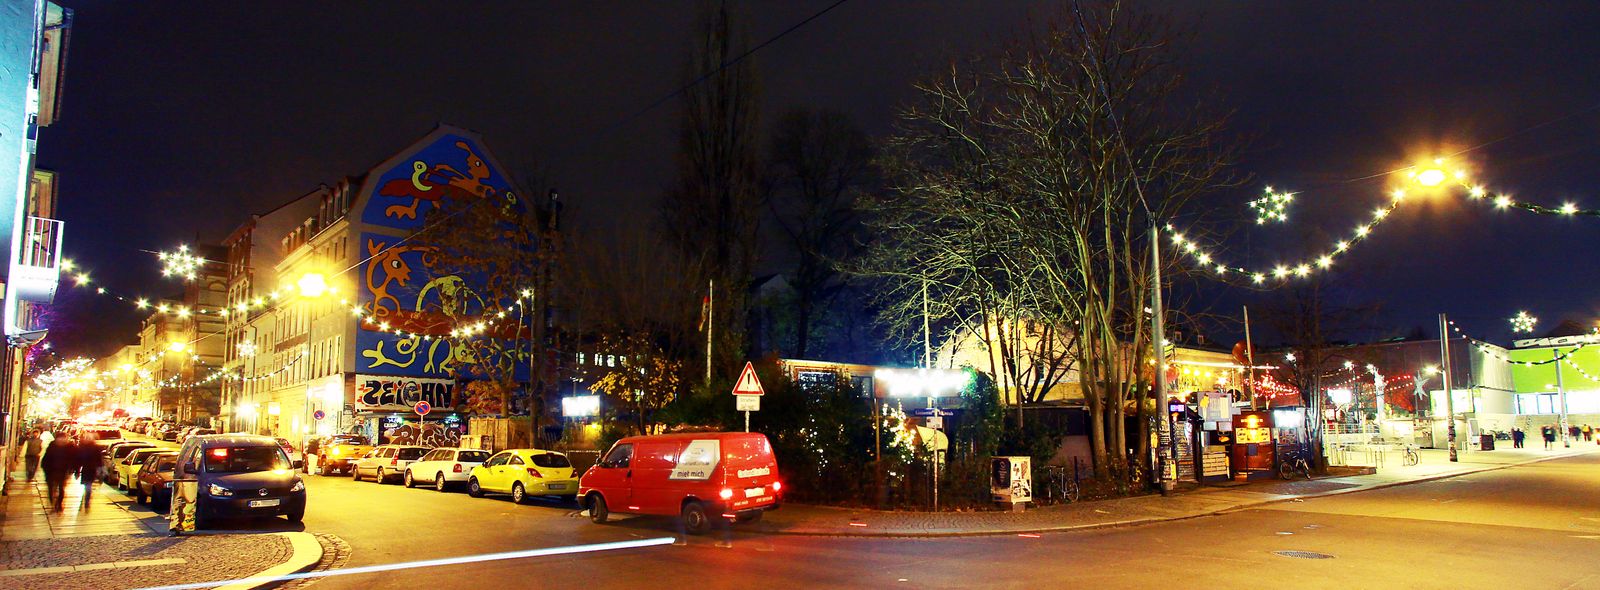 Weihnachtsbeleuchtung in der Neustadt - Foto: Youssef Safwan